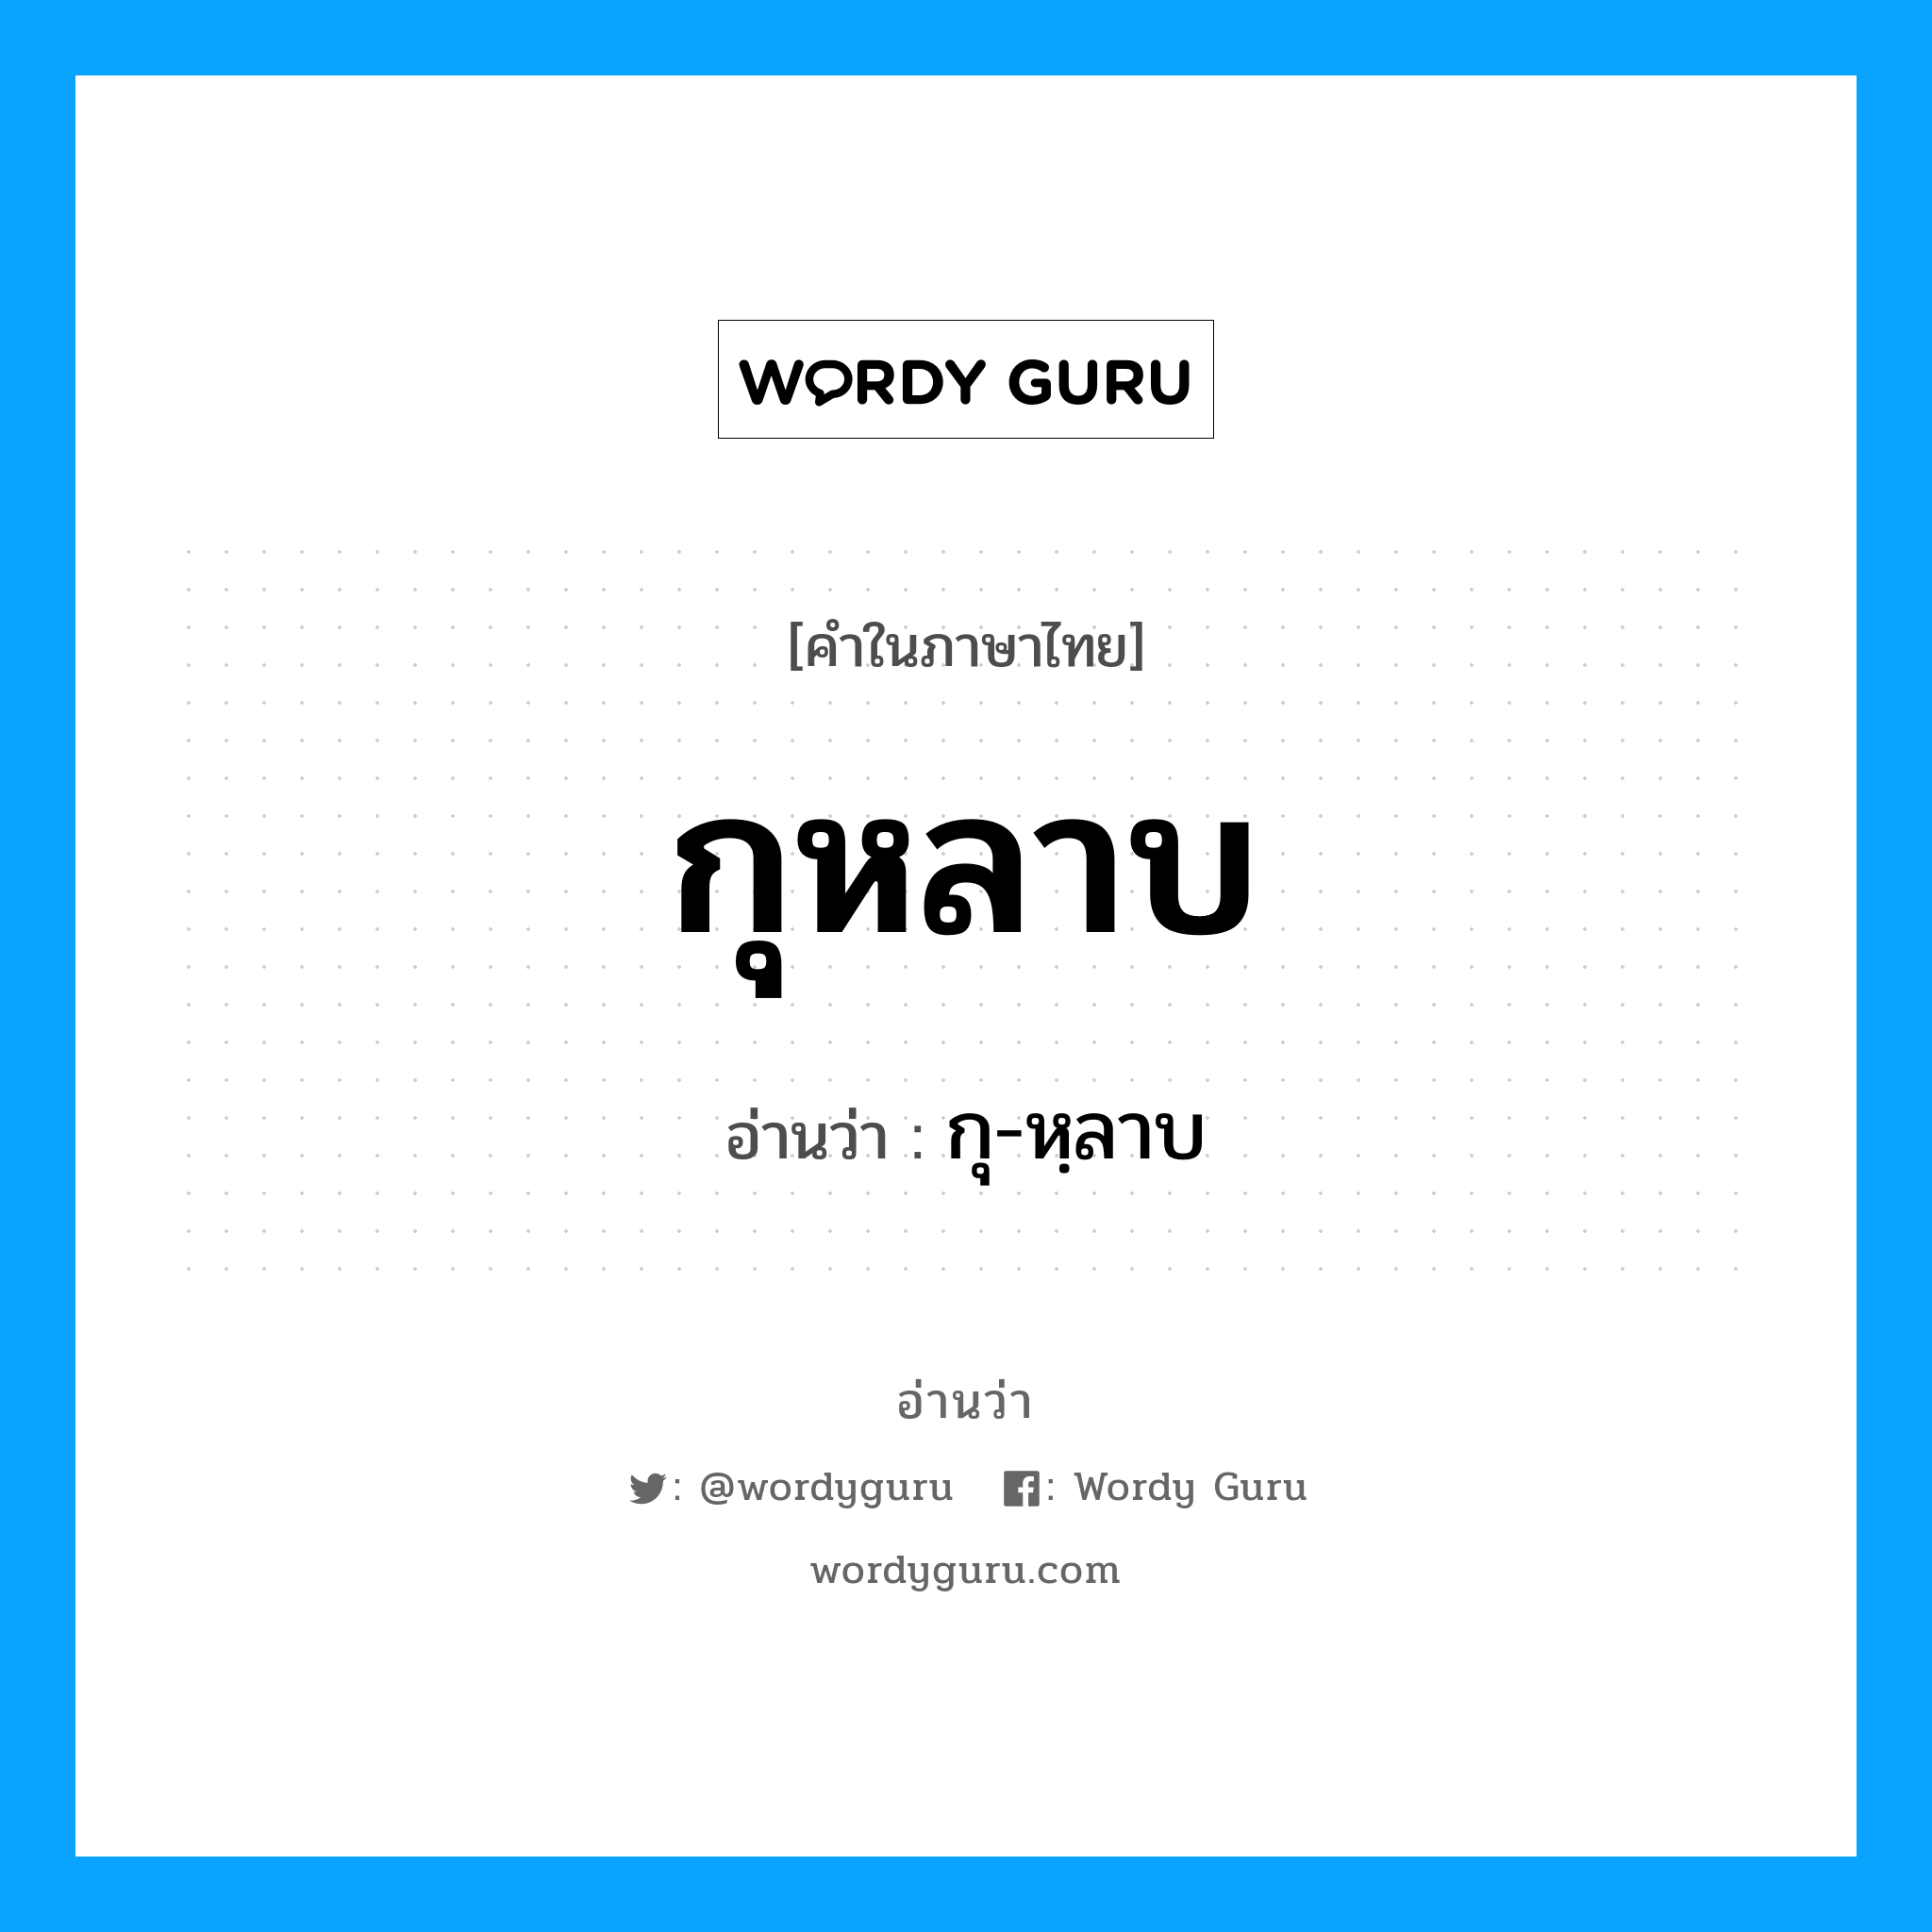 กุ-หฺลาบ เป็นคำอ่านของคำไหน?, คำในภาษาไทย กุ-หฺลาบ อ่านว่า กุหลาบ